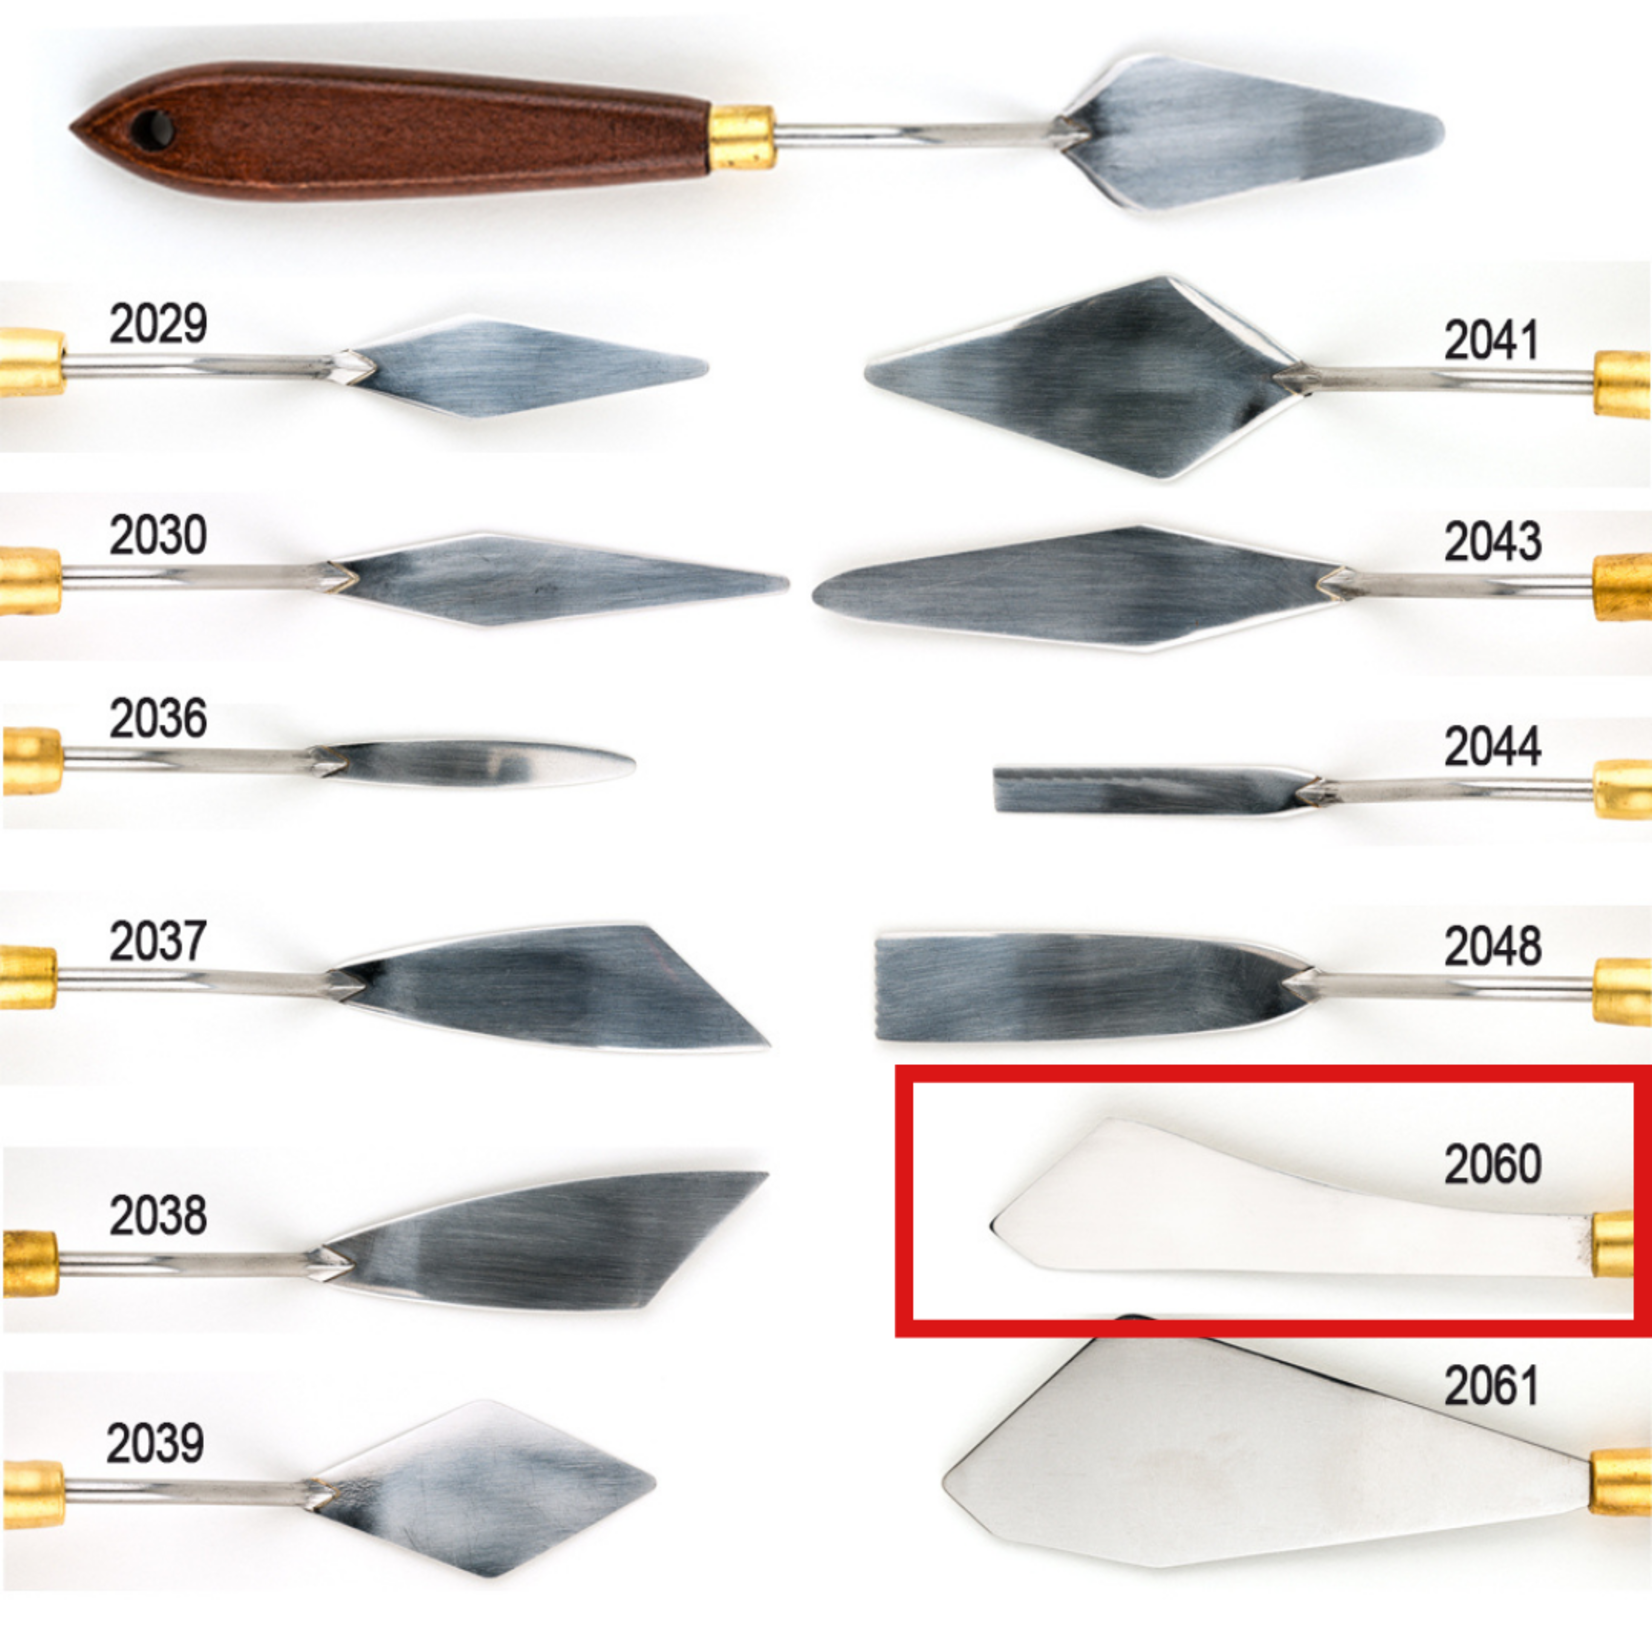 DEMCO DEMCO ART PRO PALETTE KNIFE 2060